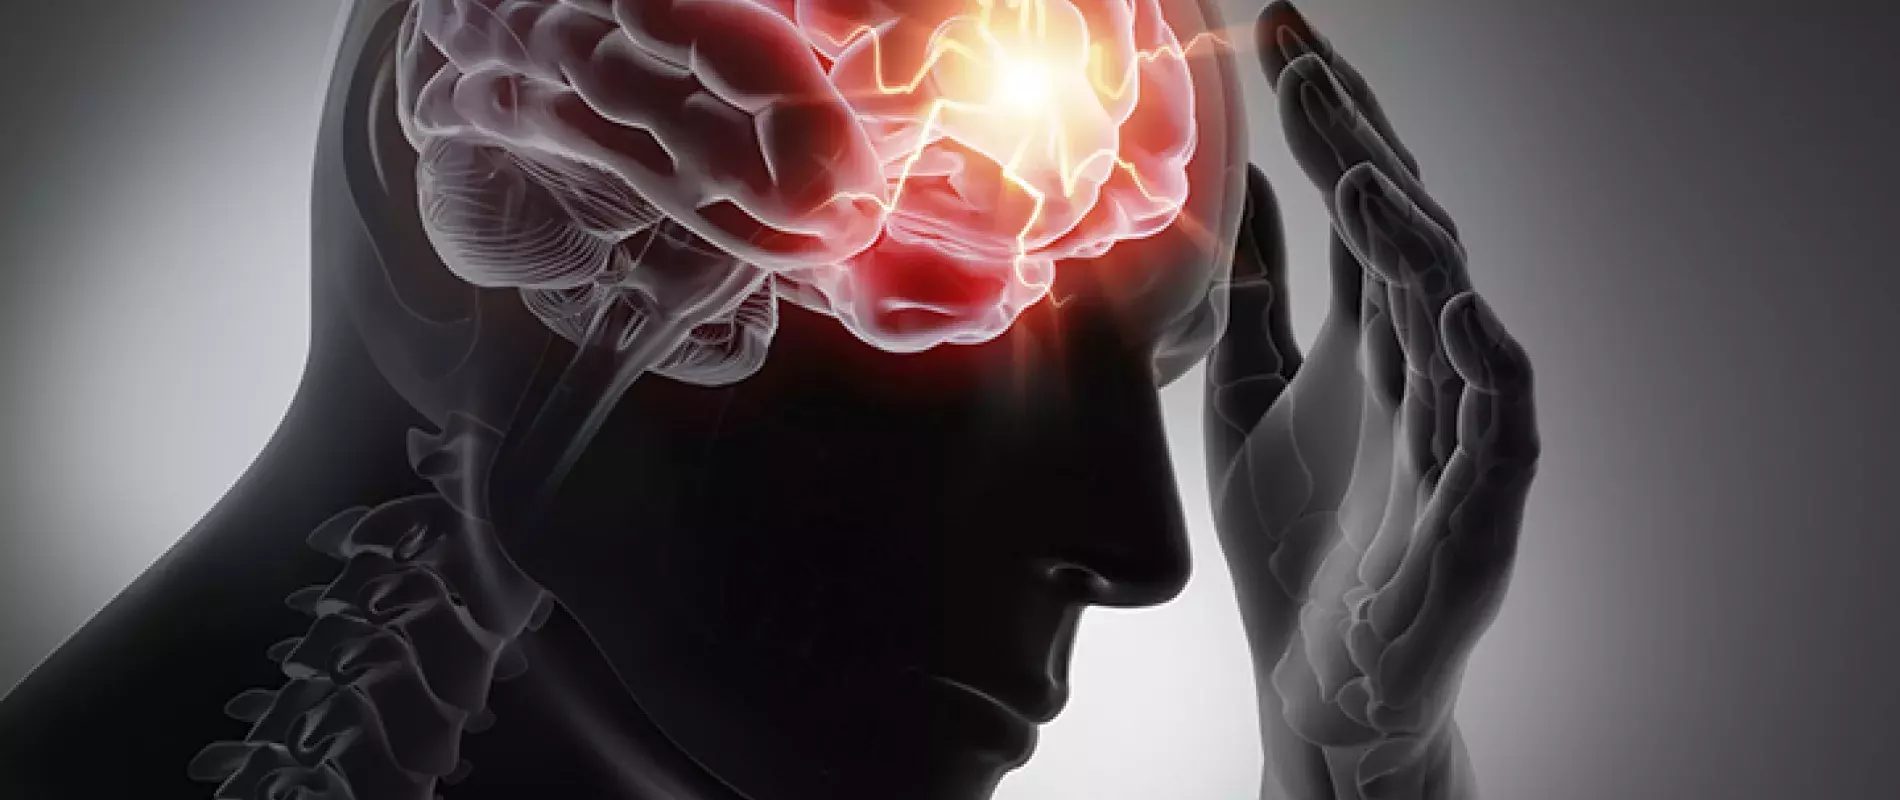 9 faits sur l'épilepsie, une maladie toujours mal connue | MMJ